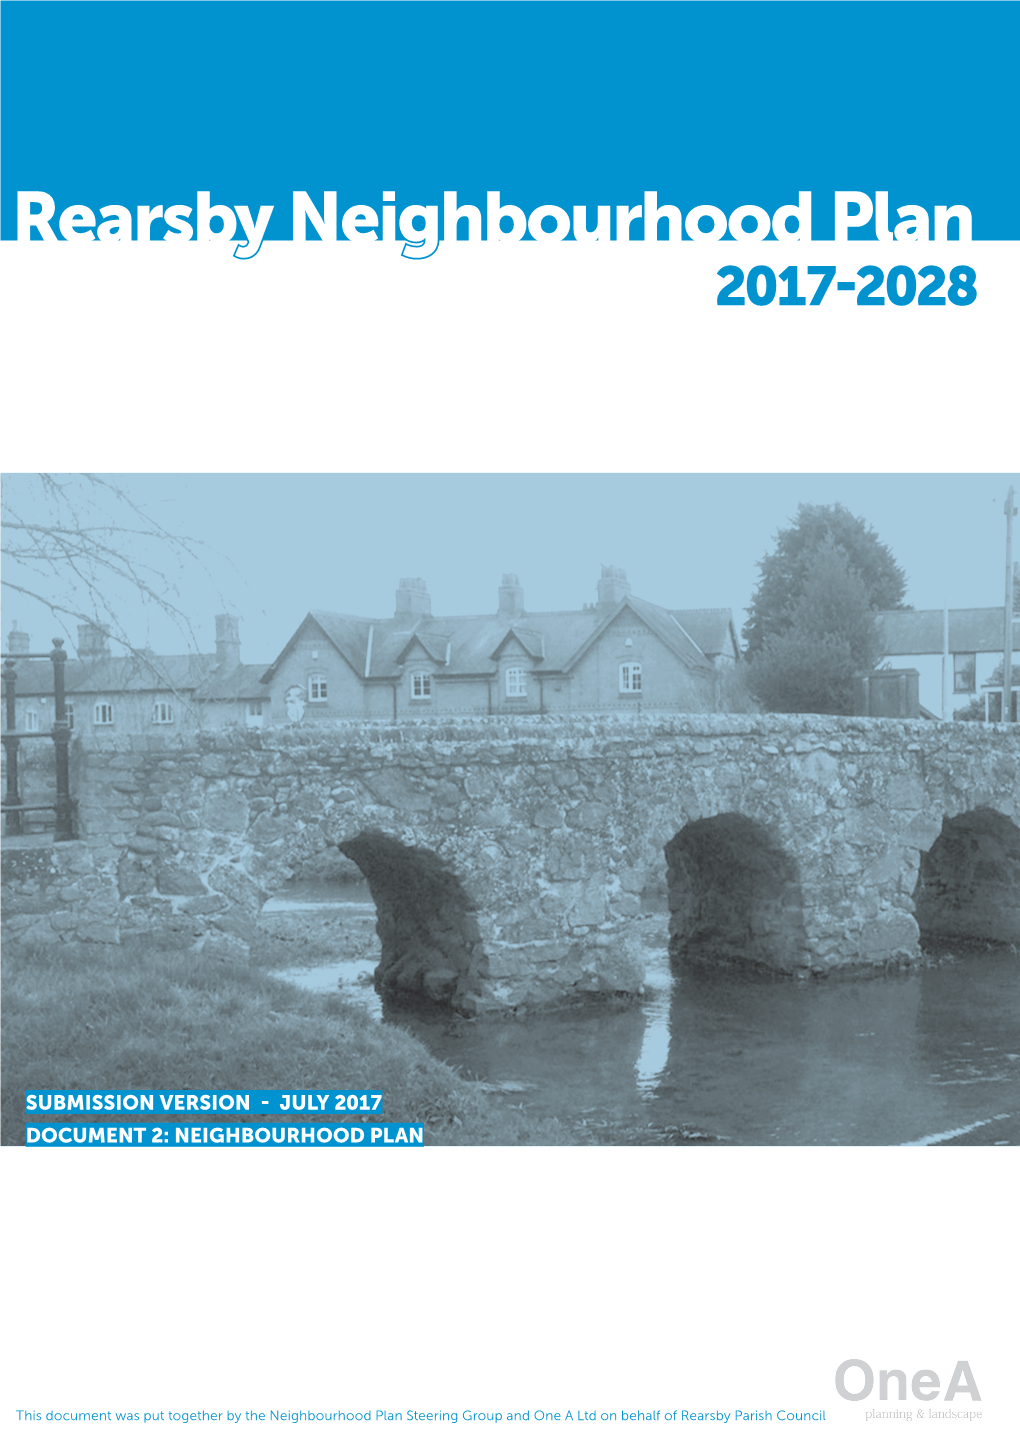 Rearsby Neighbourhood Plan 2017-2028